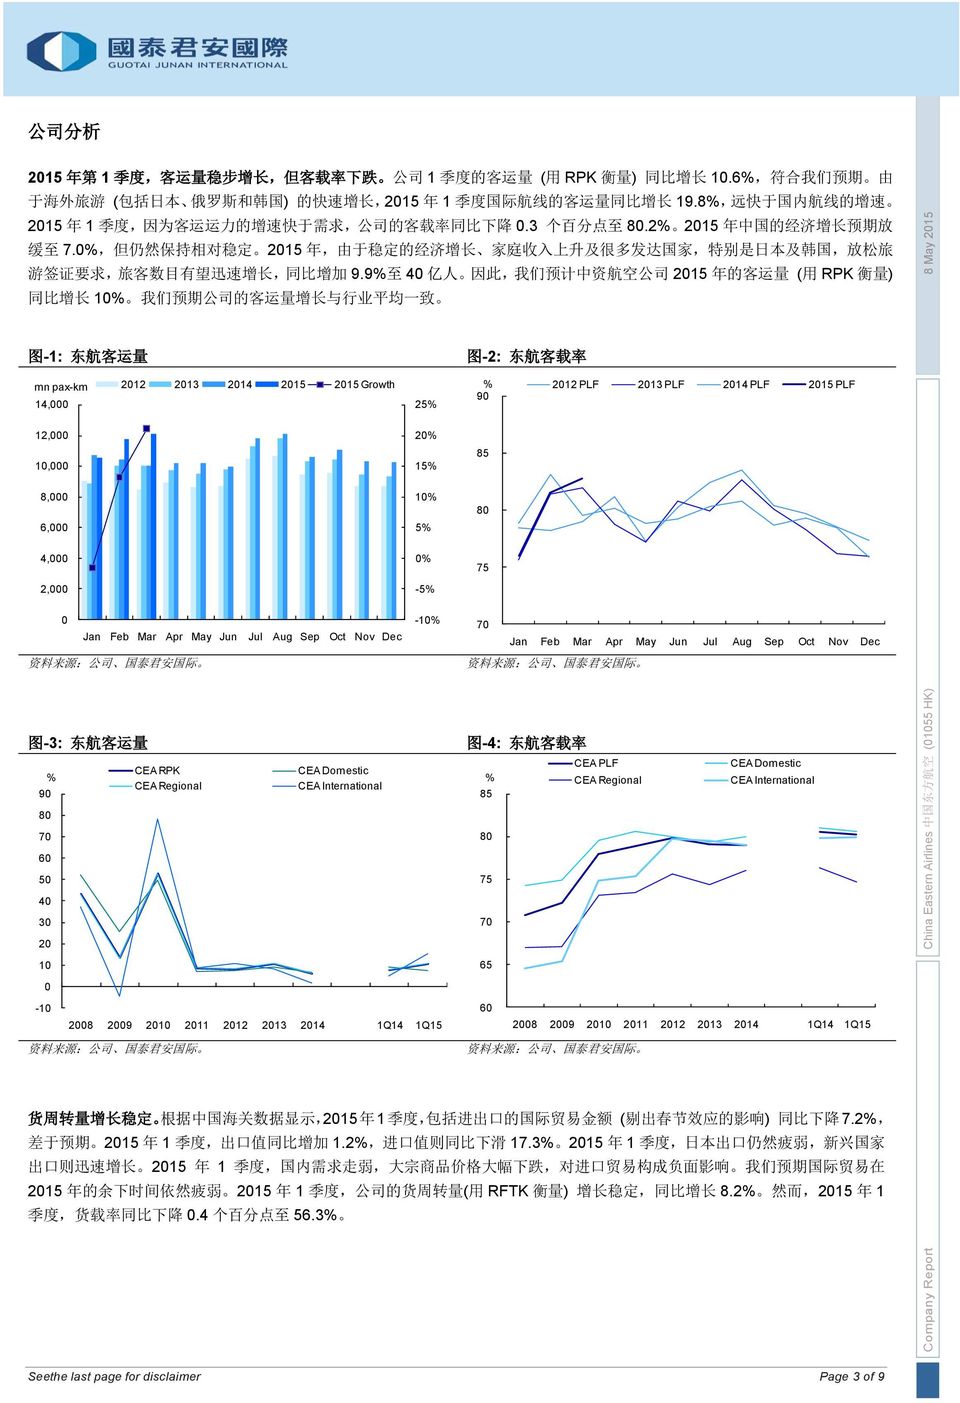 2 215 年 中 国 的 经 济 增 长 预 期 放 缓 至 7., 但 仍 然 保 持 相 对 稳 定 215 年, 由 于 稳 定 的 经 济 增 长 家 庭 收 入 上 升 及 很 多 发 达 国 家, 特 别 是 日 本 及 韩 国, 放 松 旅 游 签 证 要 求, 旅 客 数 目 有 望 迅 速 增 长, 同 比 增 加 9.